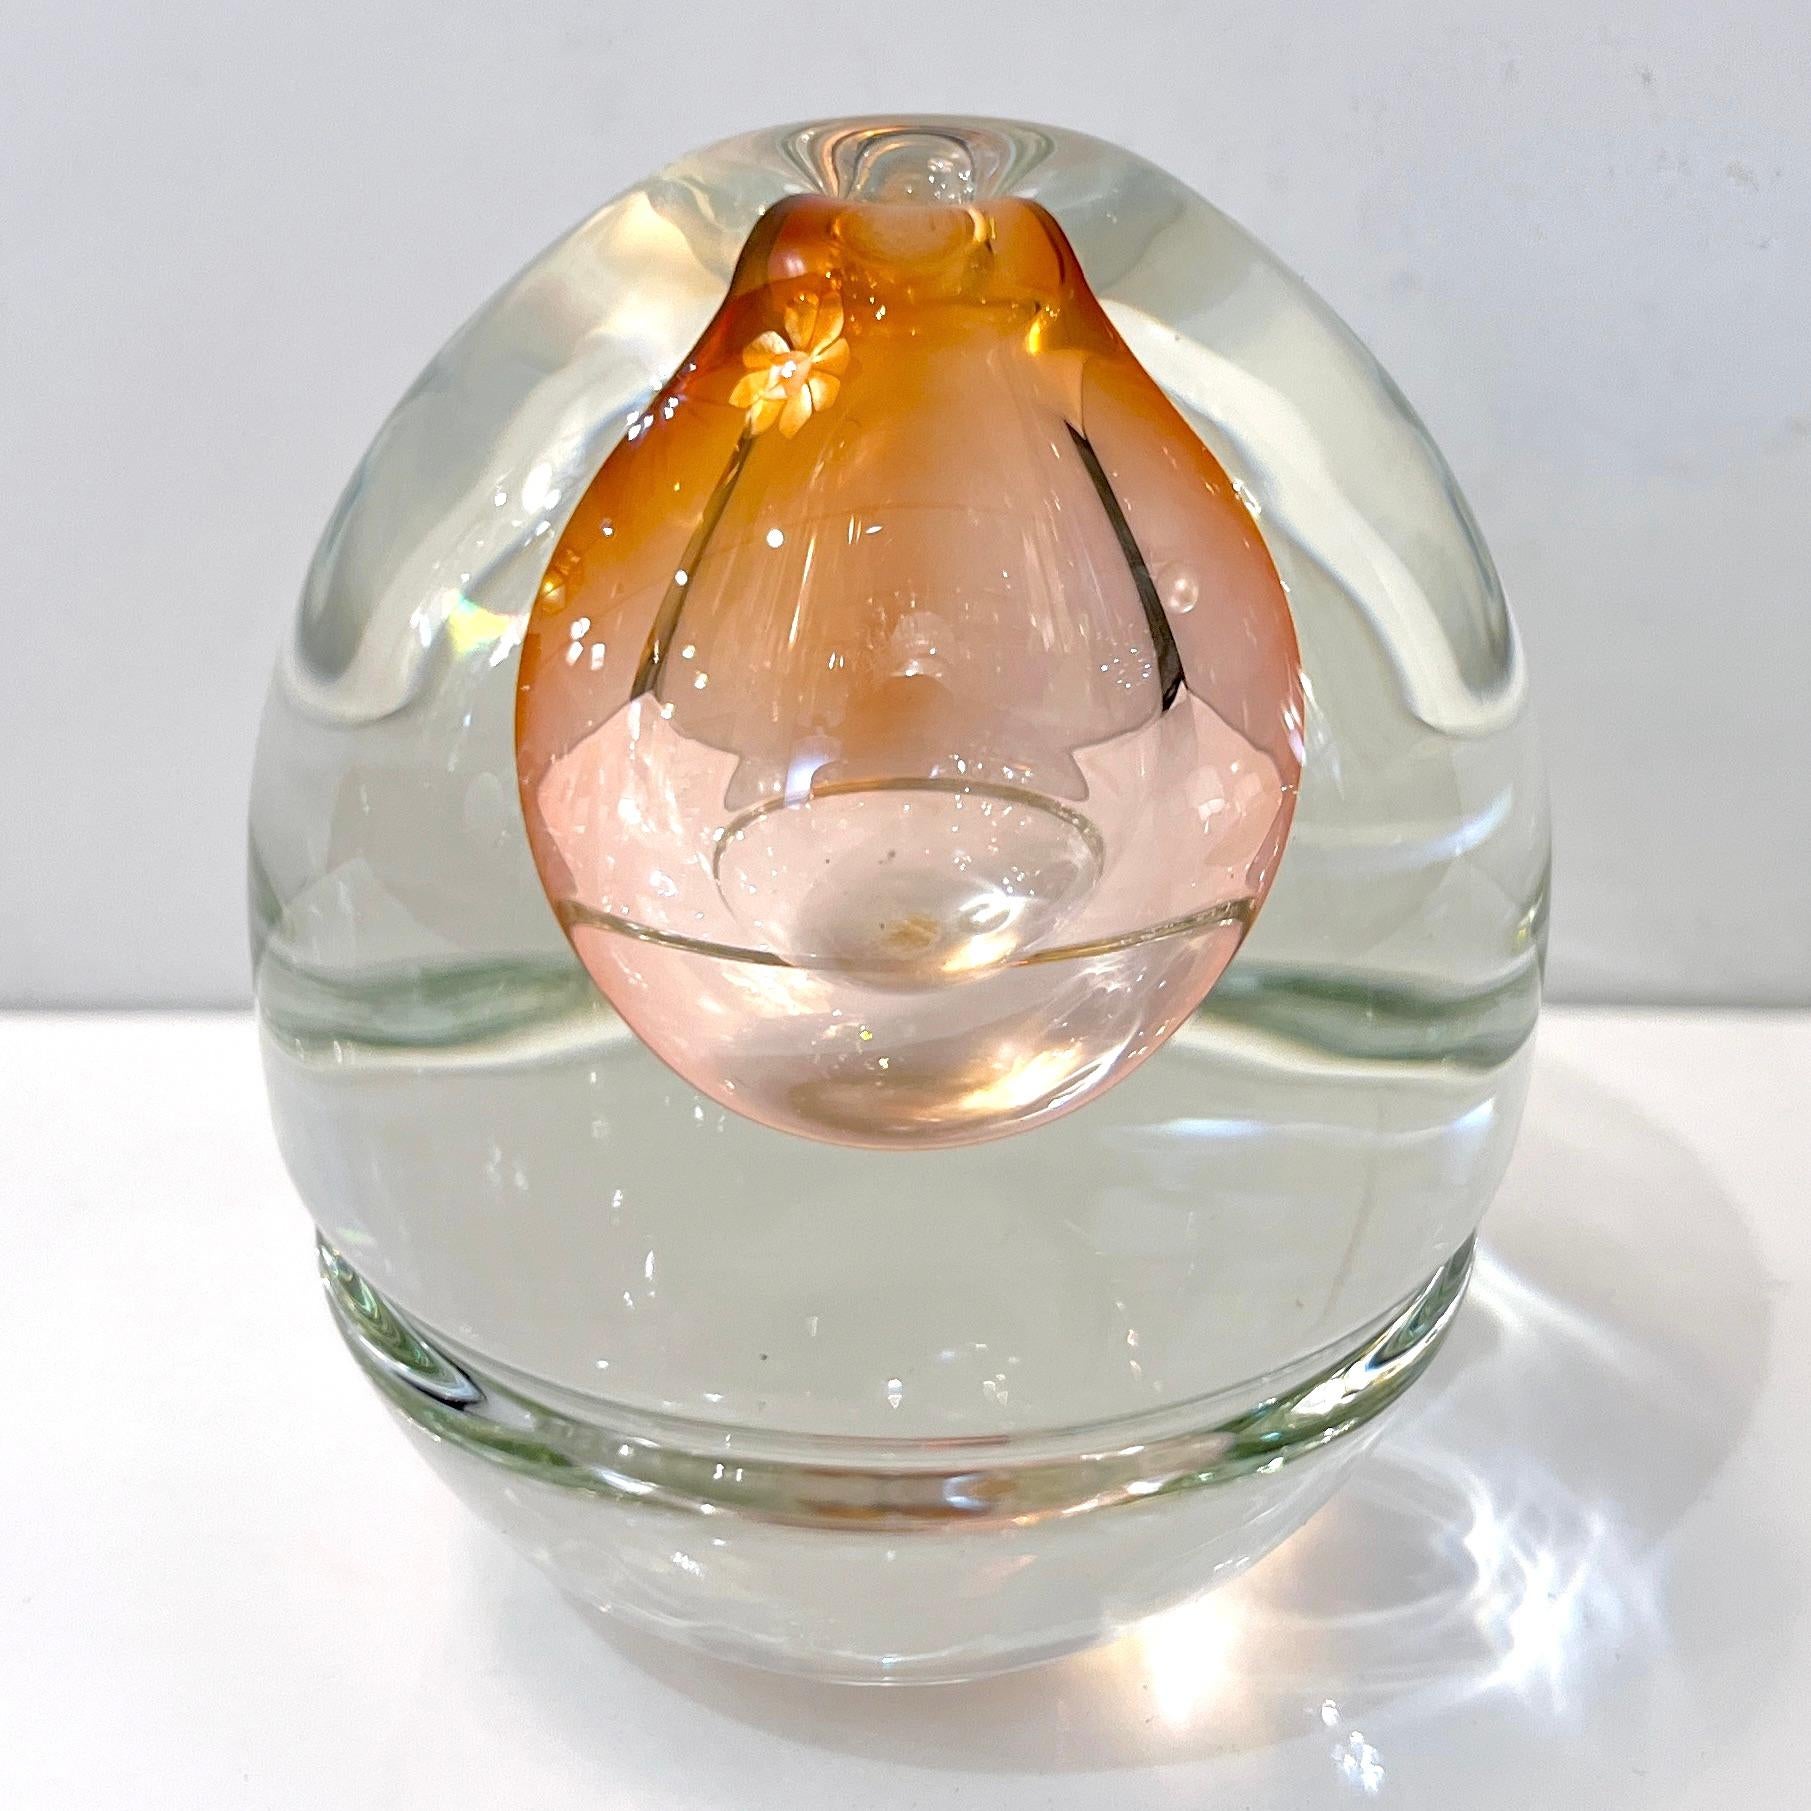 Signiert Young & Constantin, nummeriert 048828, eine raffinierte Art Glas Studio kleine Vase mit Art Deco Flair in mundgeblasenem Glas, mit einem leeren Tropfen Form Kern der seltenen Farbe, ein blush rose Champagner-Rosa, in Sommerso gearbeitet,